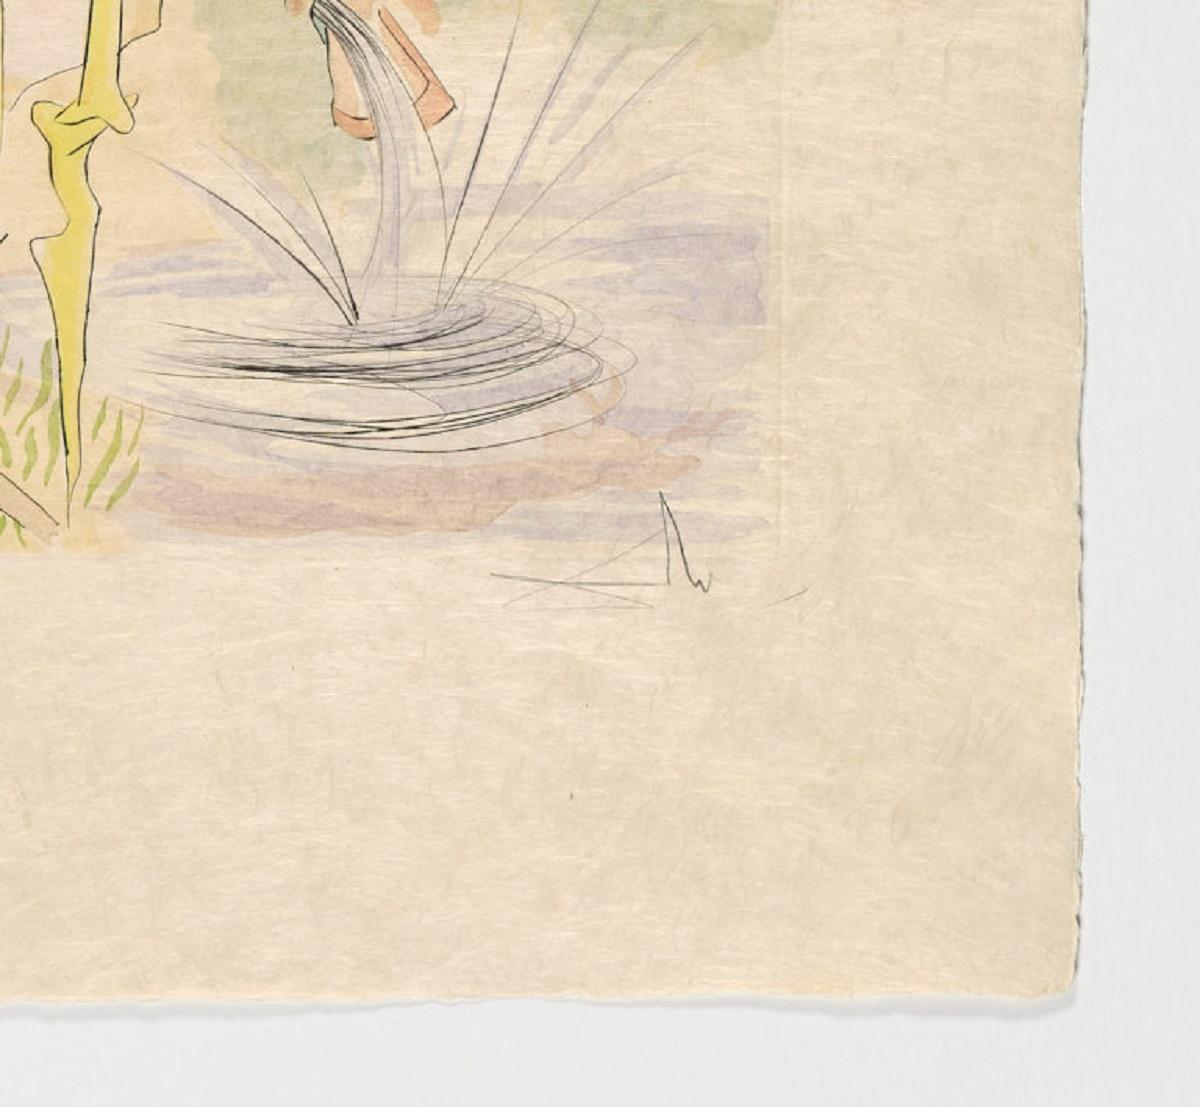 Salvador Dali (Espagne, 1904-1989)
La Cerf se voyant dans l'eau